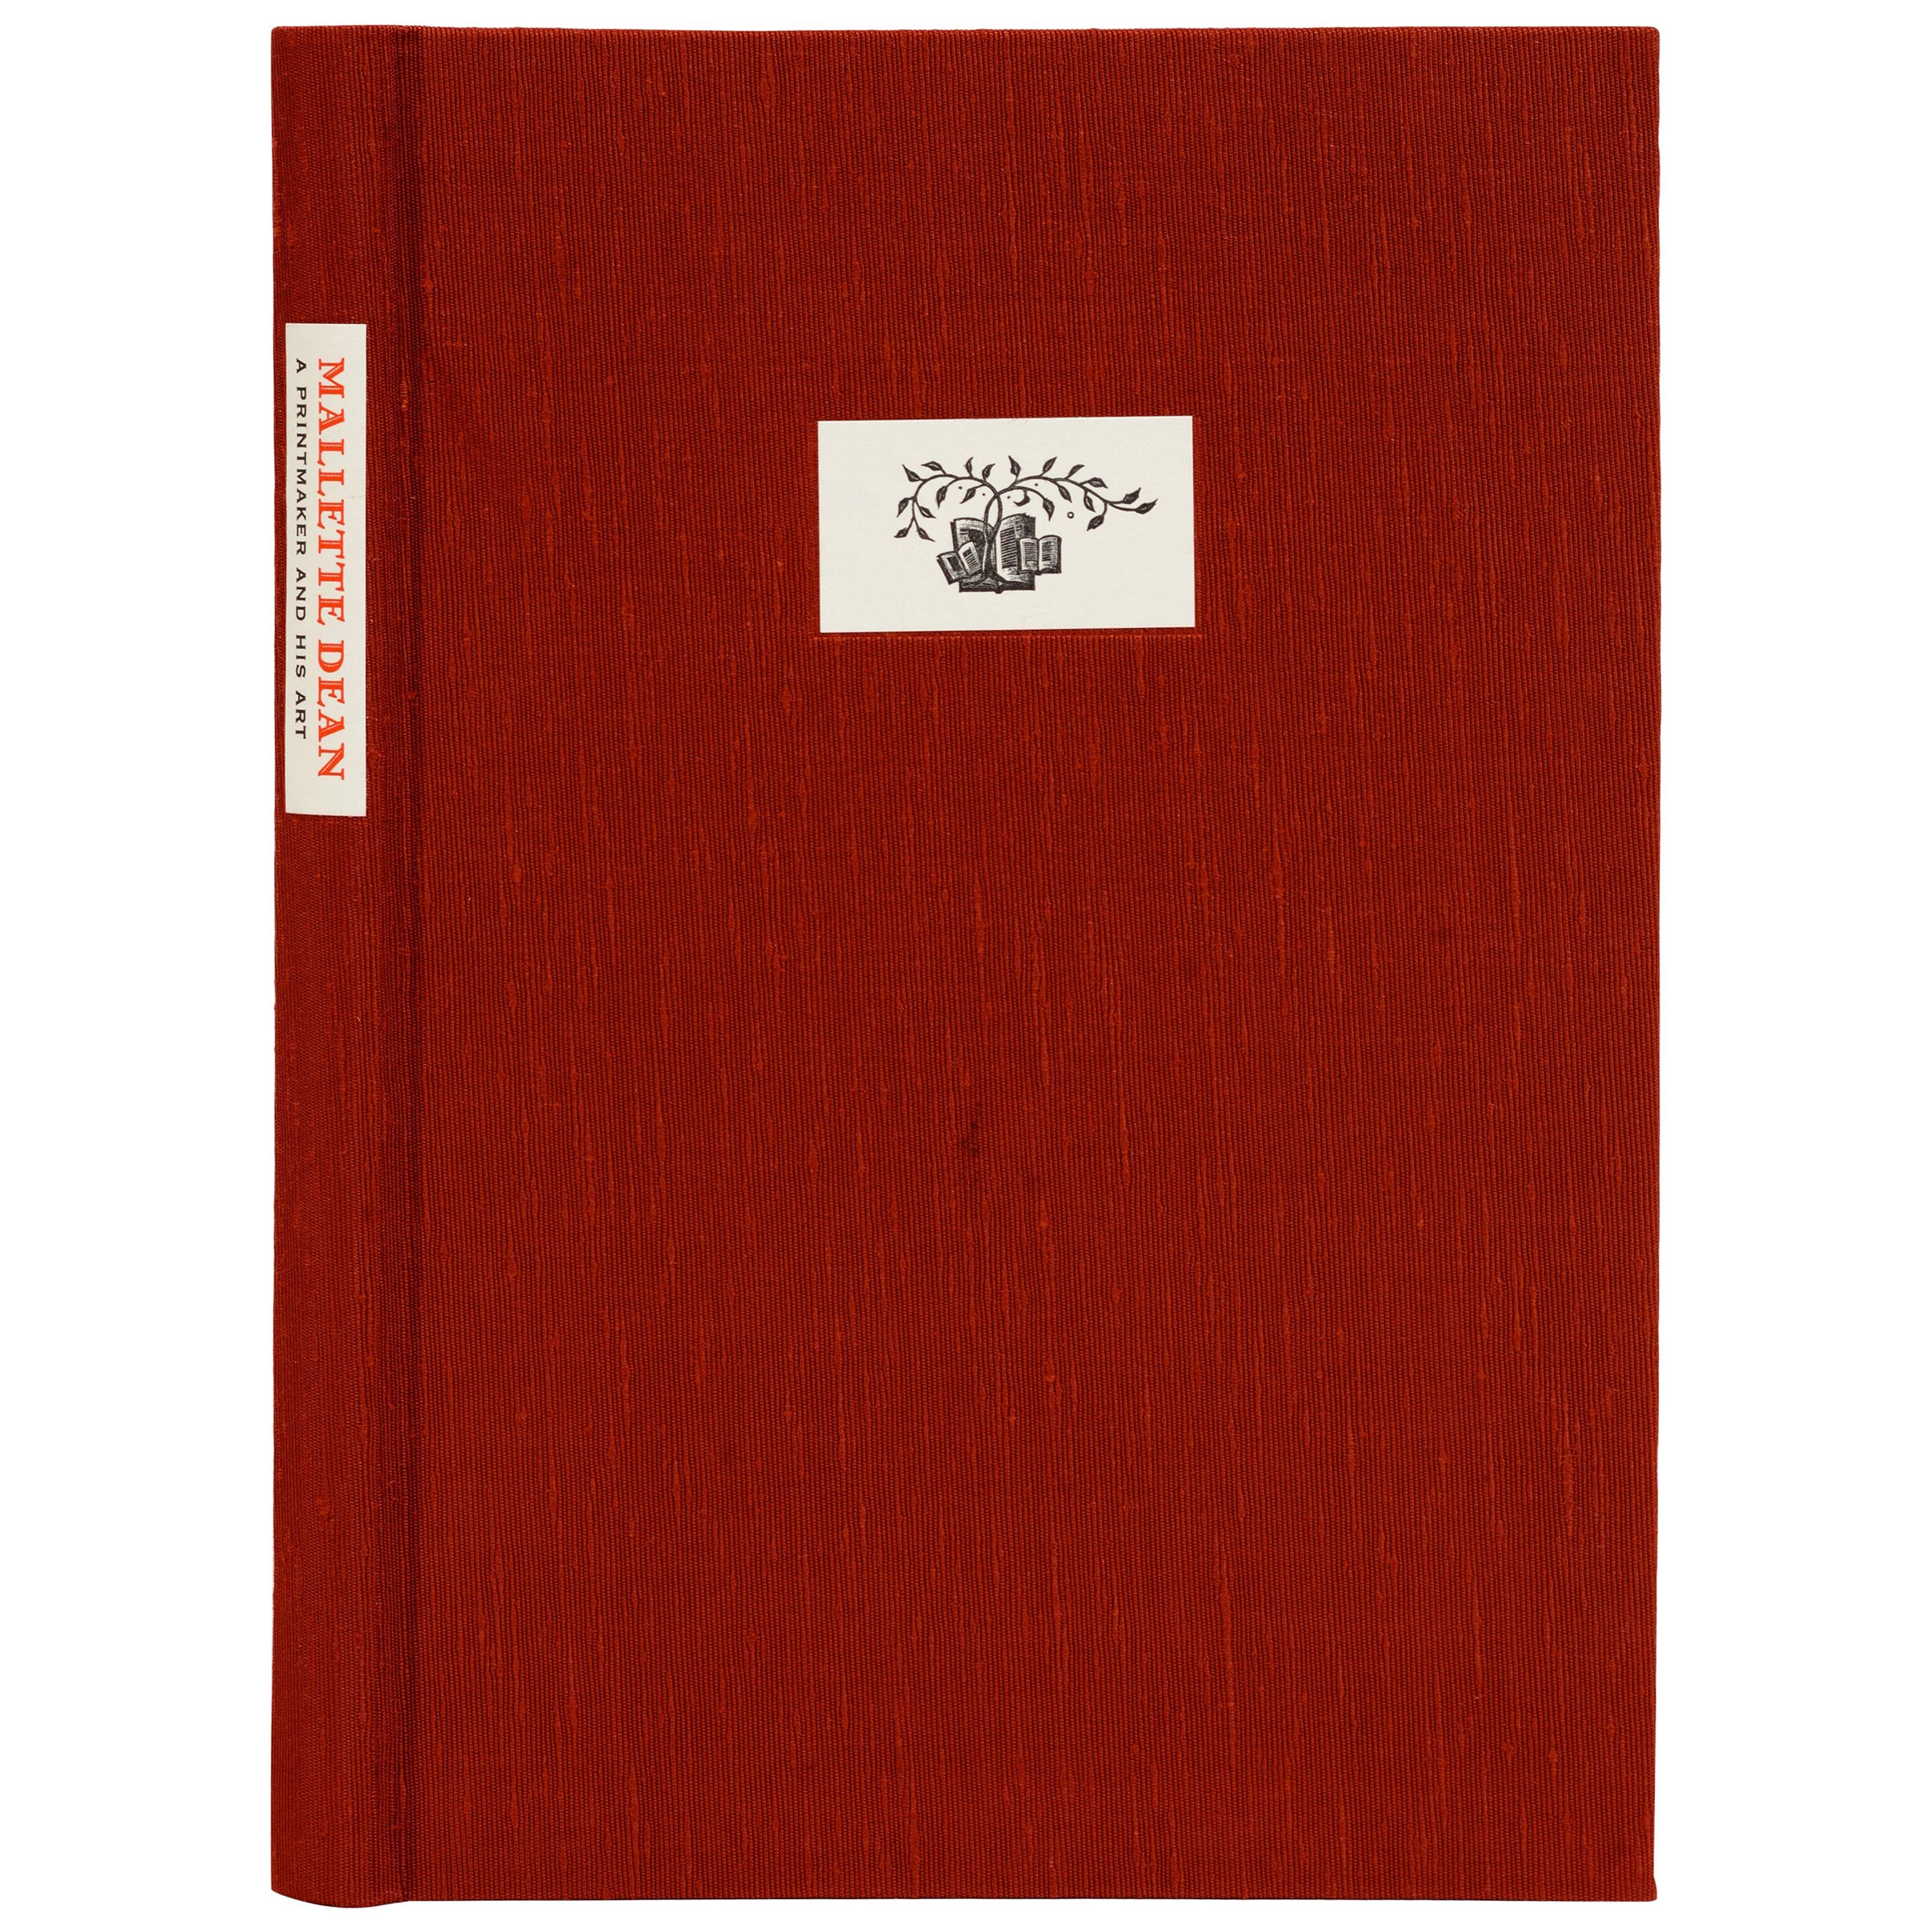 Mallette Dean, ein Druckgrafiker und seine Kunst von John Hawk, 1st Ed, #Y/26